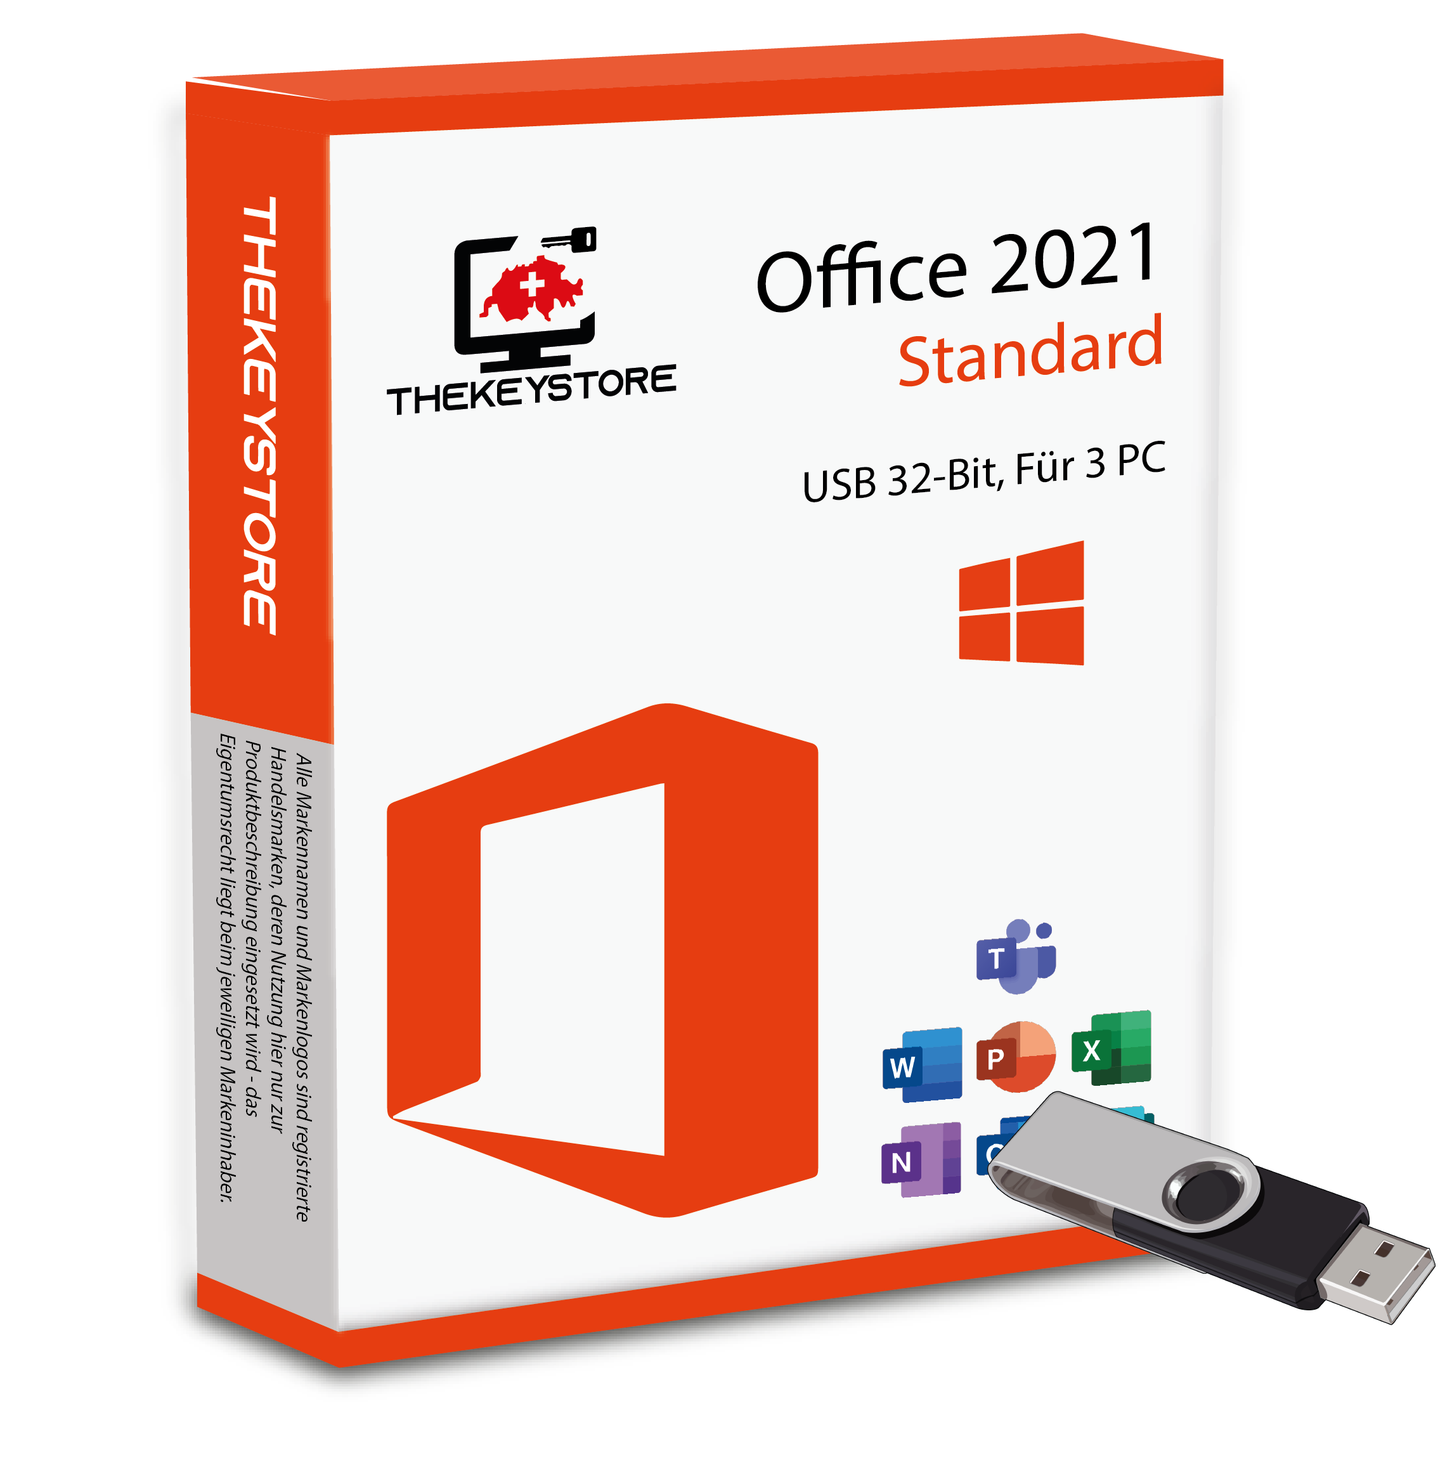 Microsoft Office 2021 Standard - Für 3 PC - TheKeyStore Schweiz